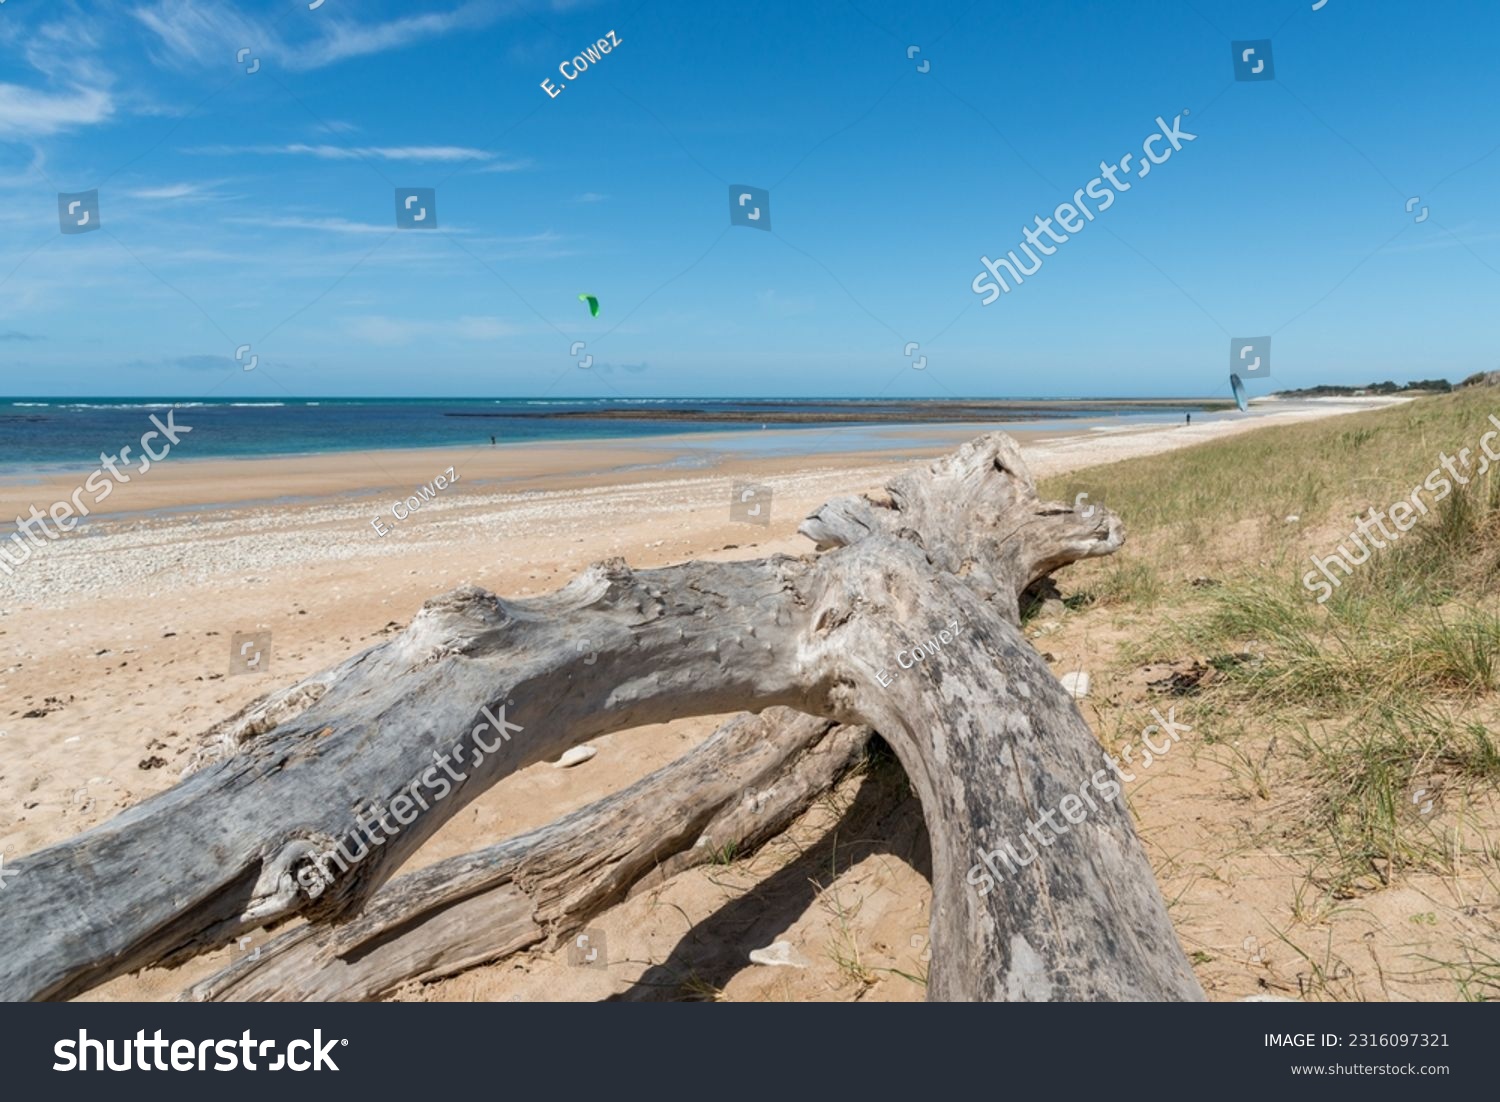 Driftwood on the beach of Saint-Denis d'Oléron, Oléron island, in Charente-Maritime (France) #2316097321